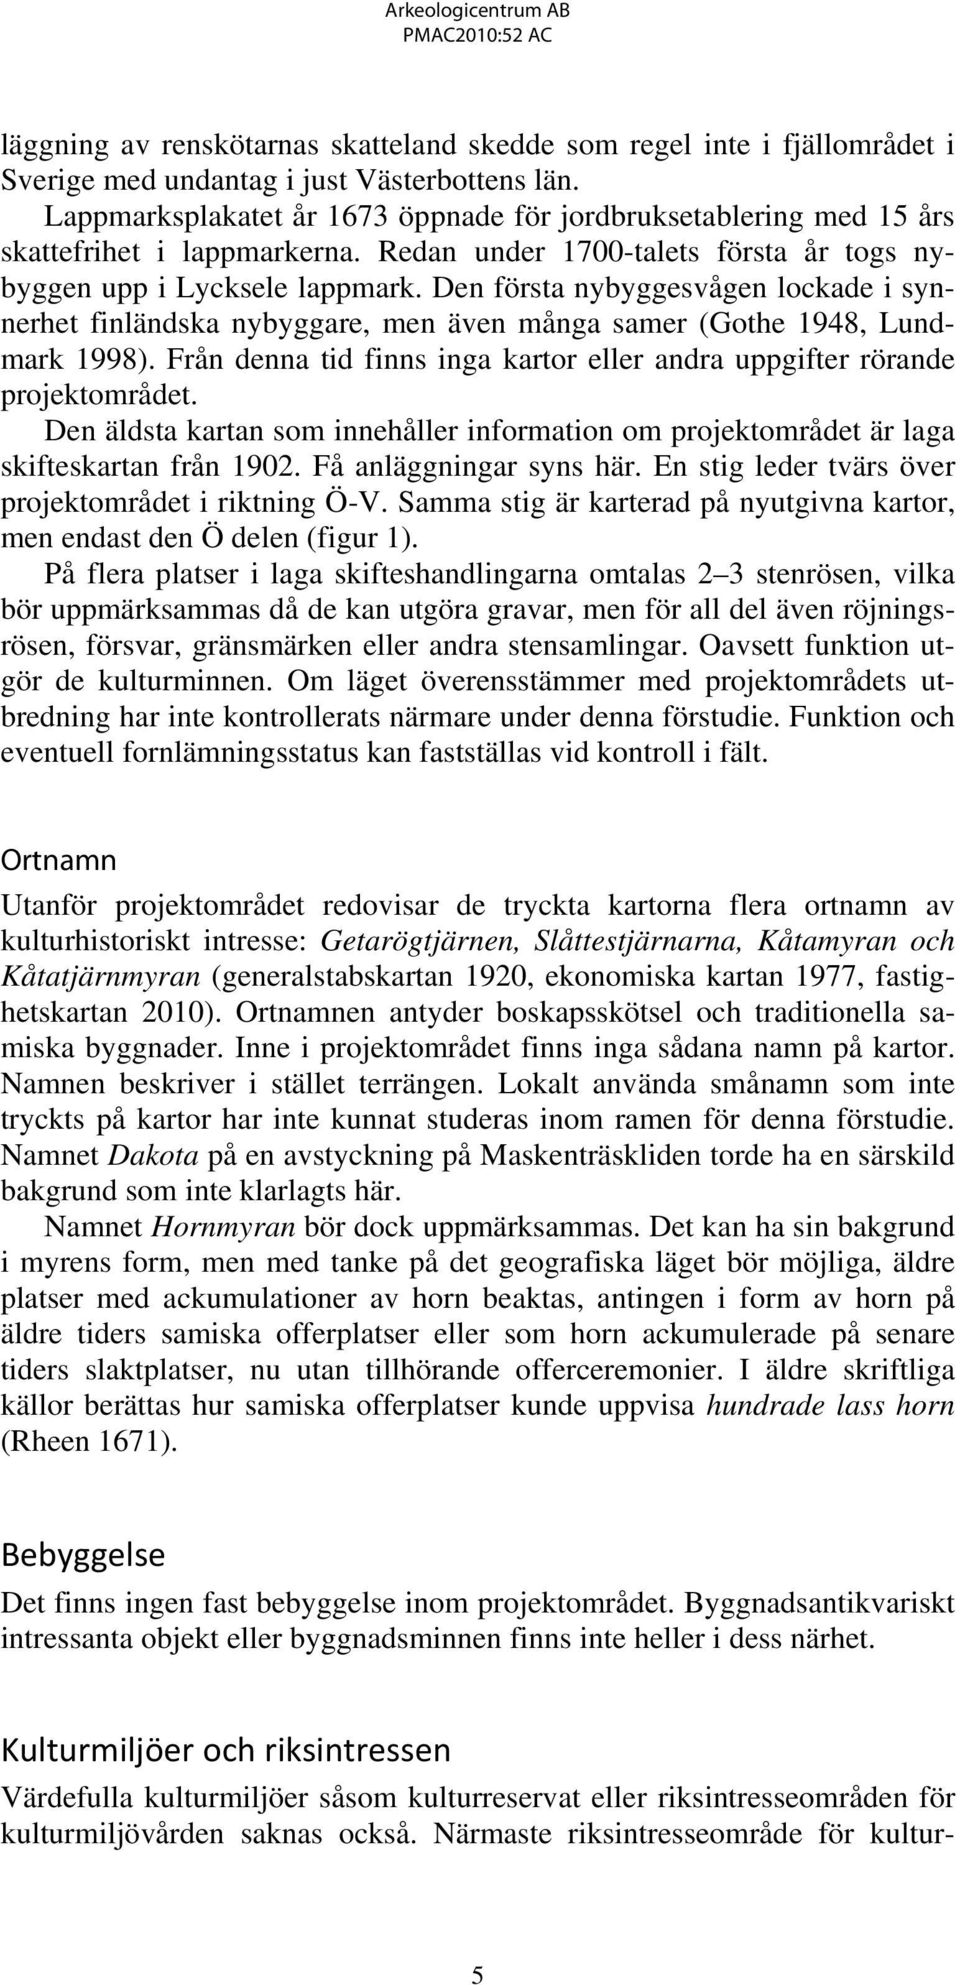 Den första nybyggesvågen lockade i synnerhet finländska nybyggare, men även många samer (Gothe 1948, Lundmark 1998). Från denna tid finns inga kartor eller andra uppgifter rörande projektområdet.